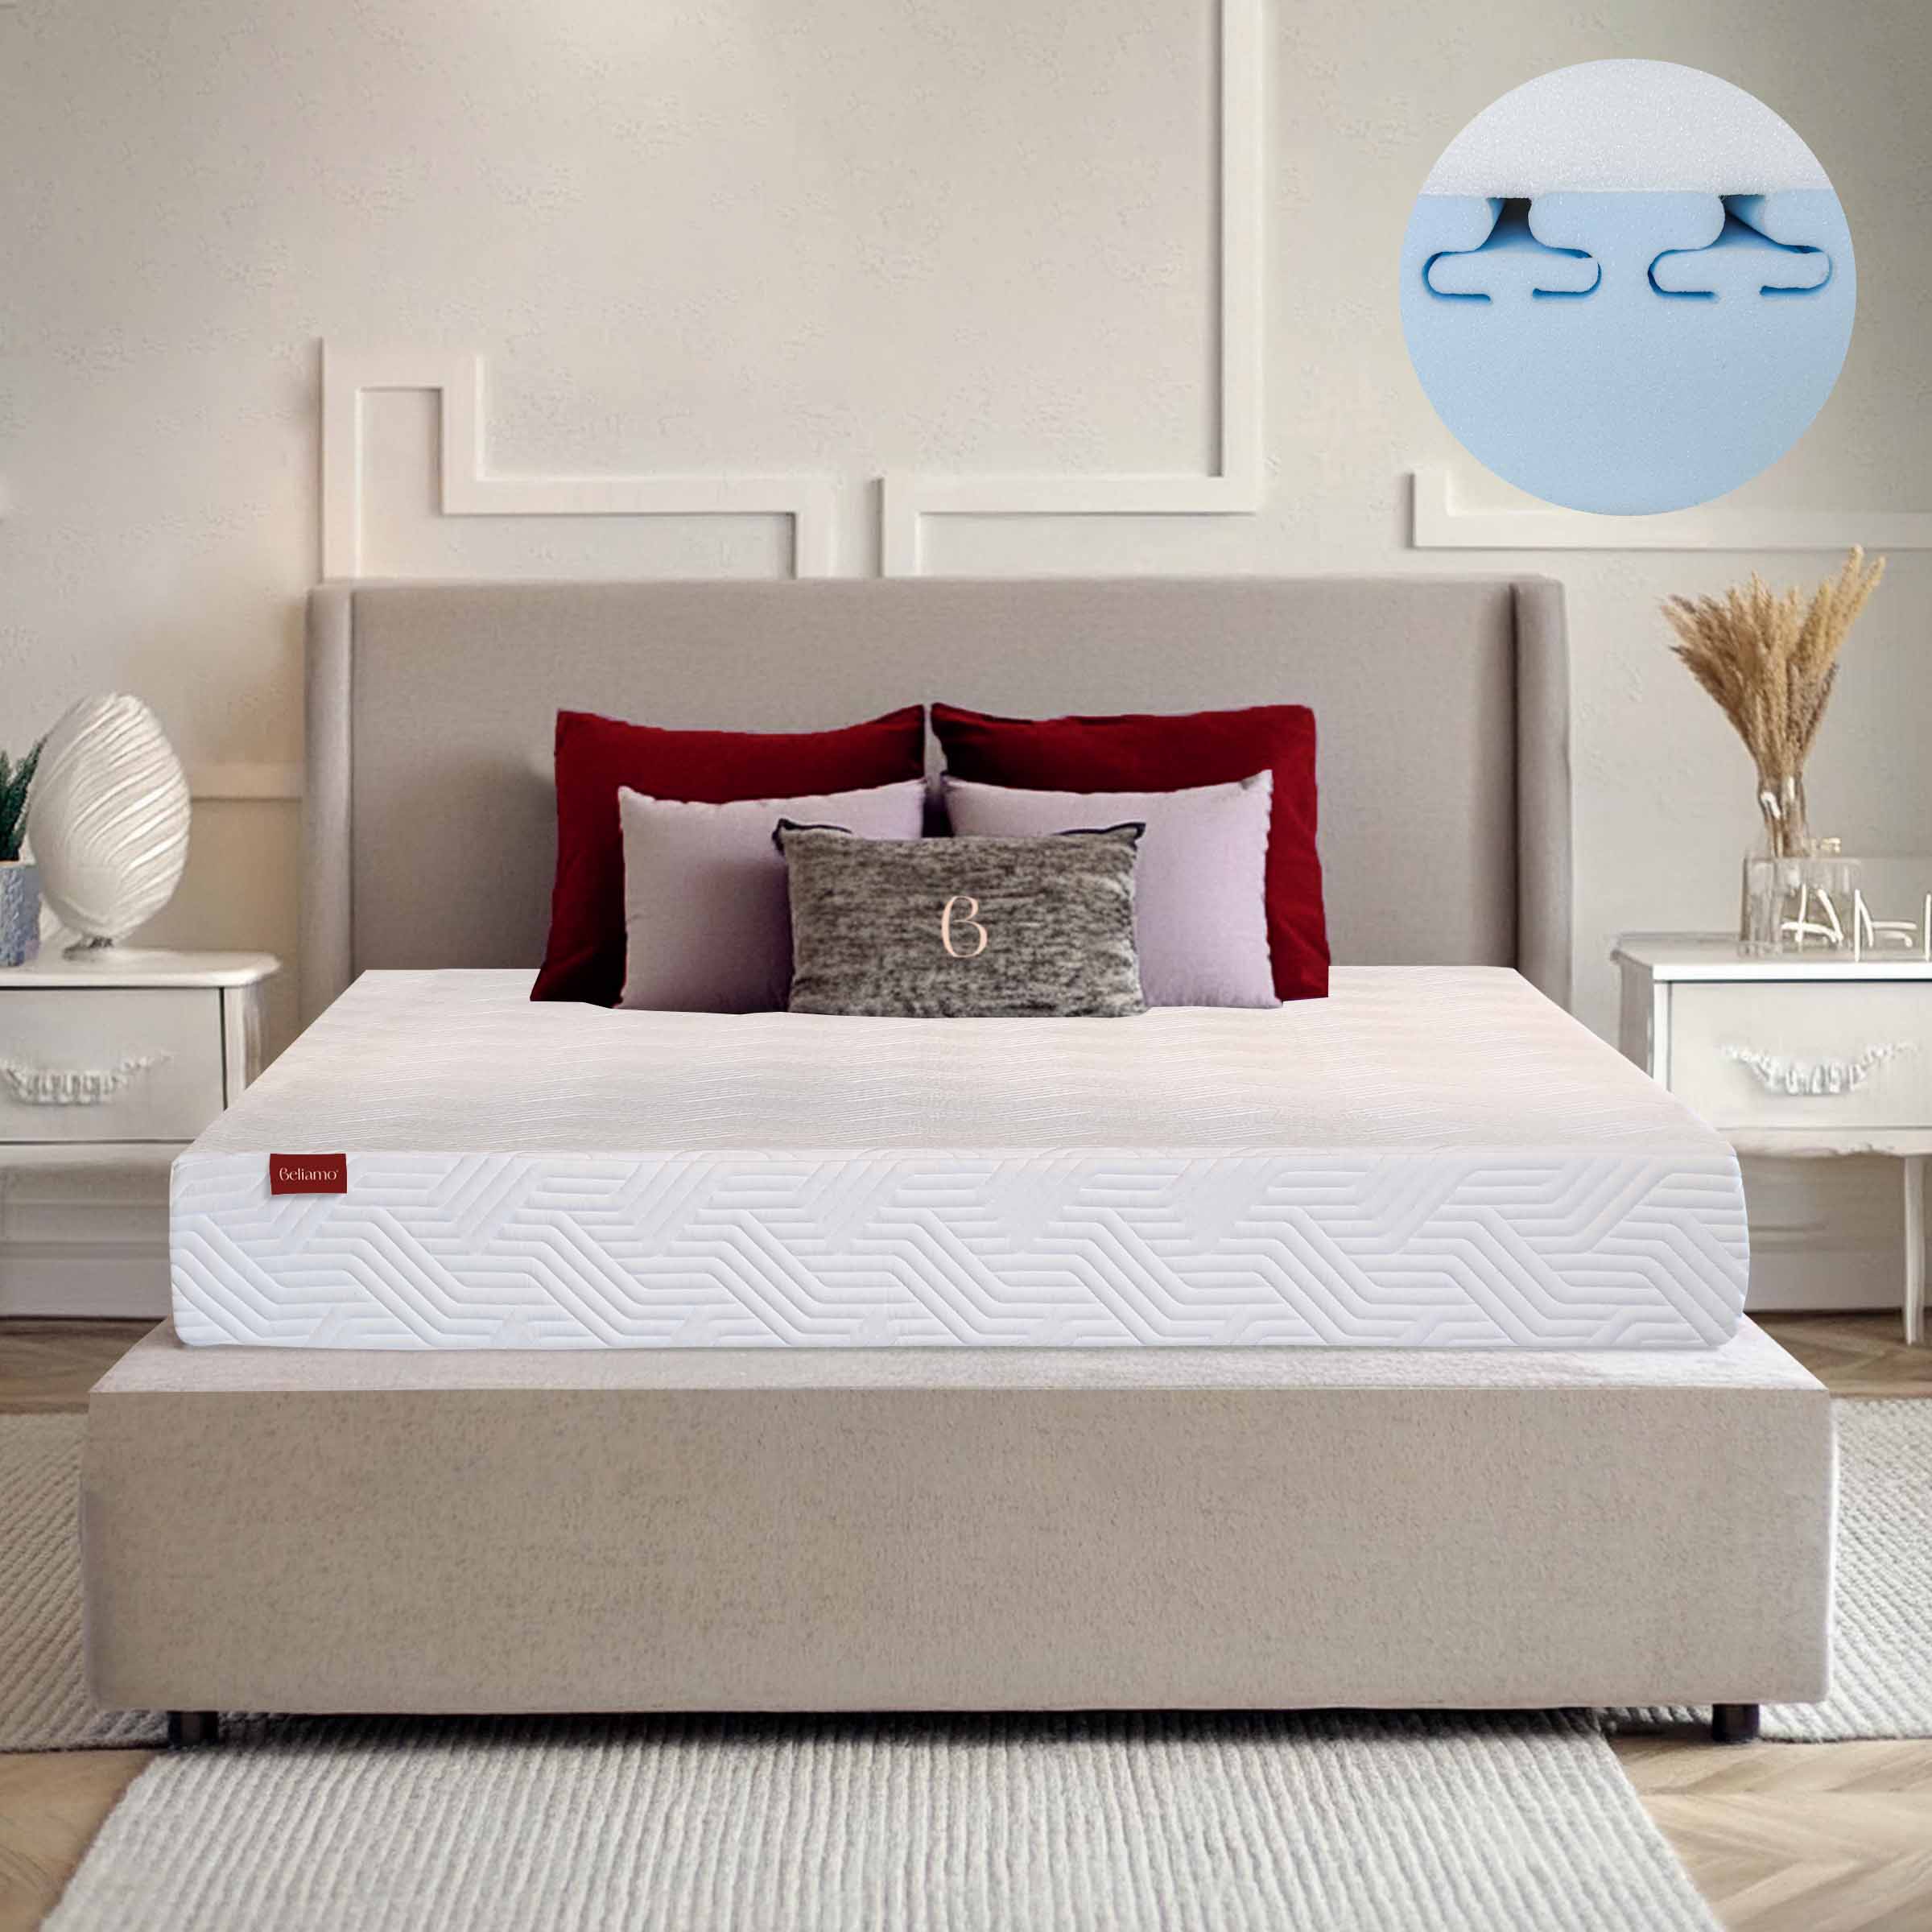 Materasso Vivaldi Waterfoam Spineline e Memory Extrapur di Beliamo, altezza 20 cm, progettato per offrire un supporto ergonomico e comfort ottimale durante il sonno